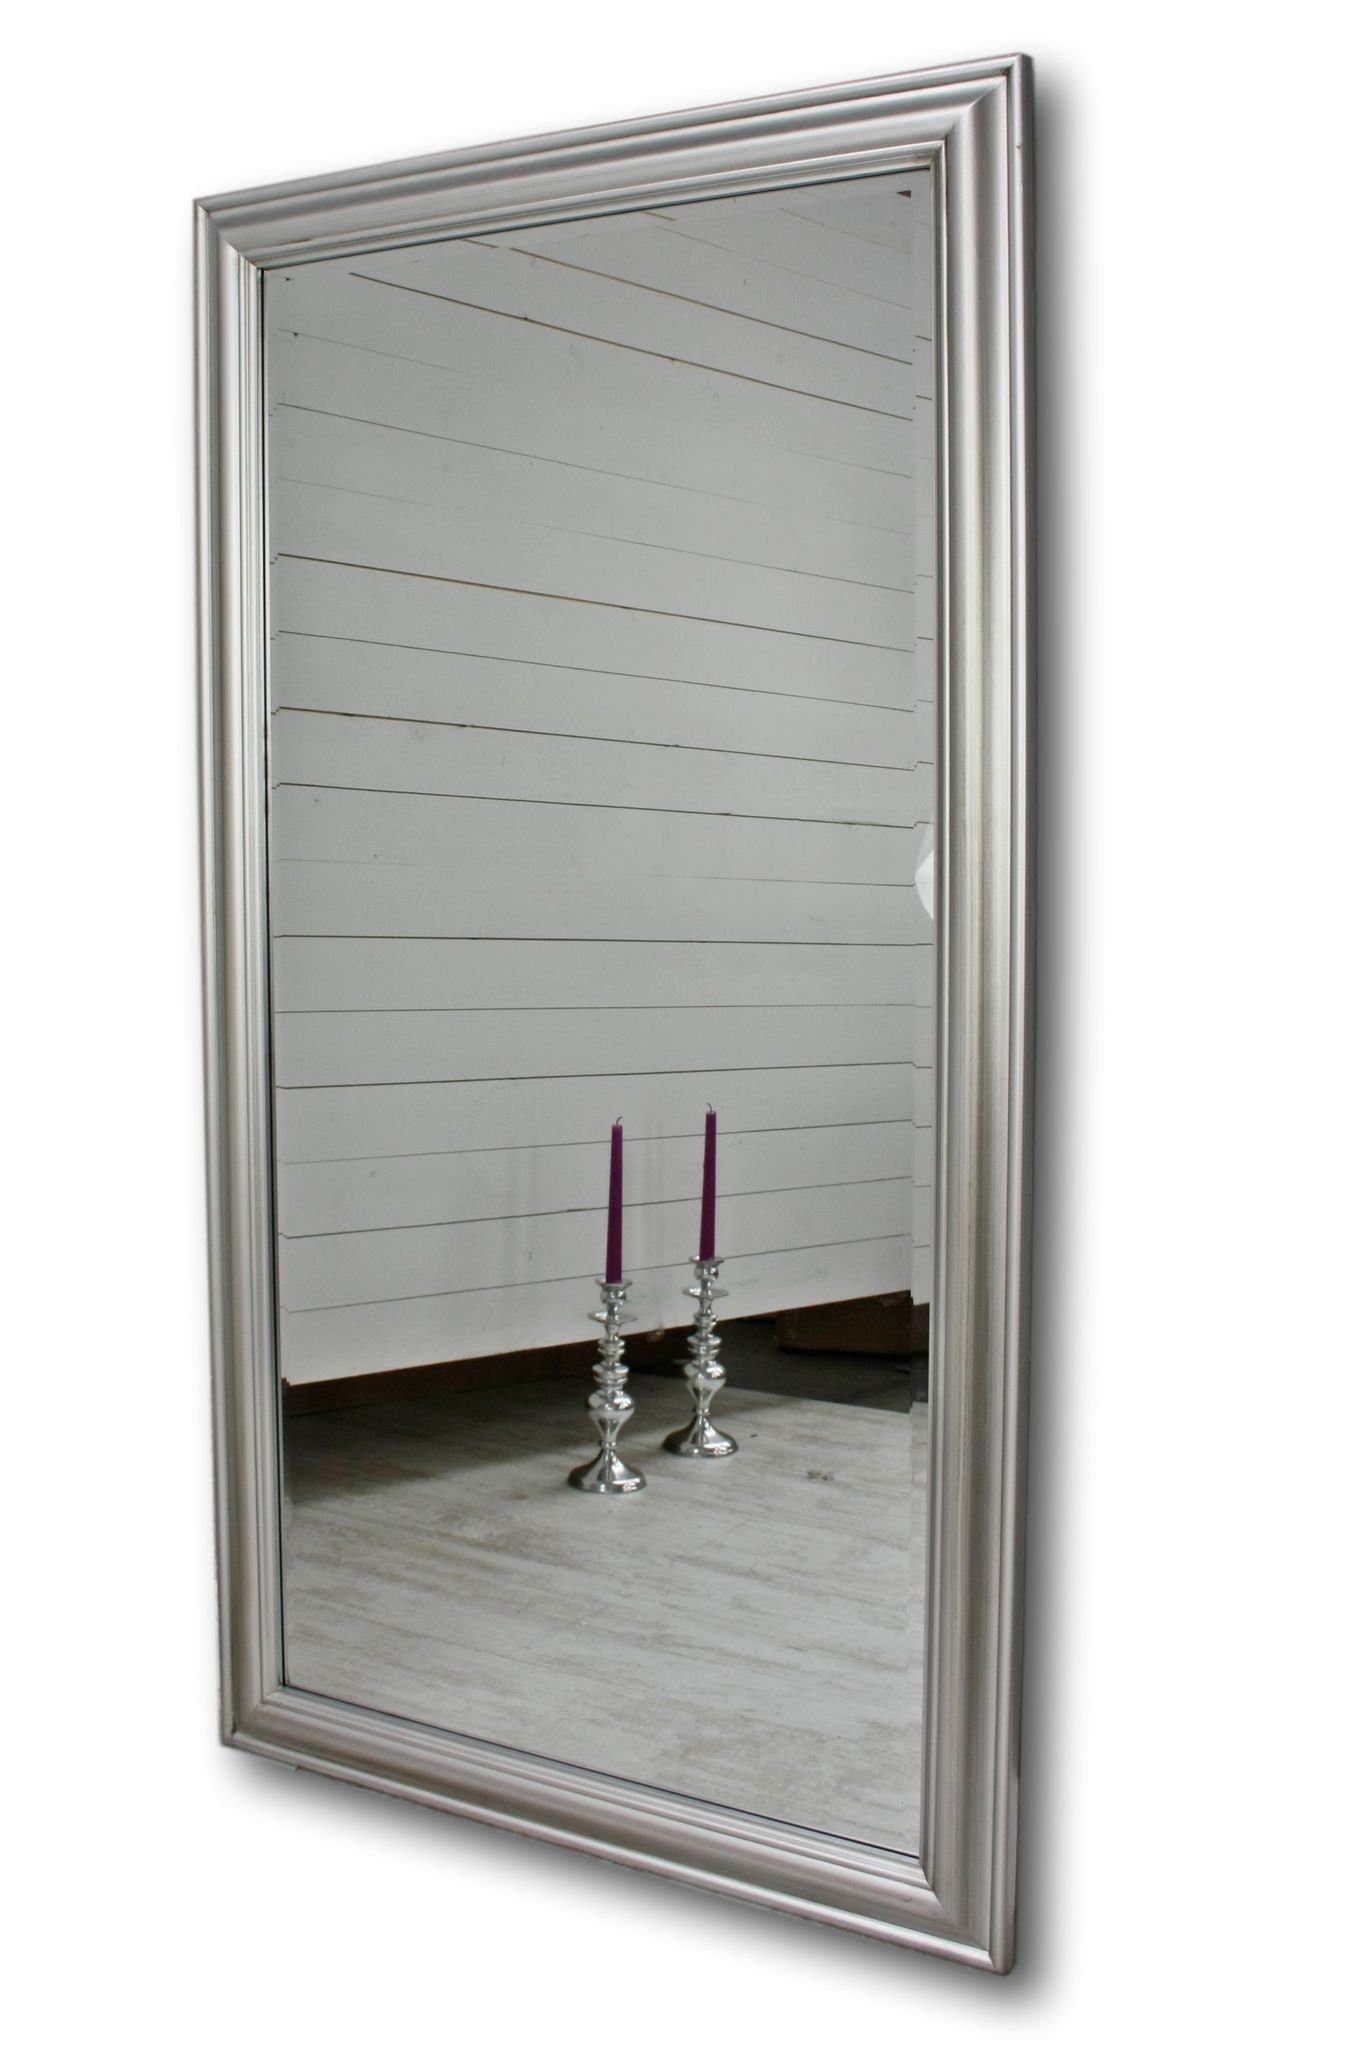 elbmöbel Badspiegel Spiegel schlicht 132x72x5cm, Spiegel: Wandspiegel 132x72x7 silber Badezimmerspiegel klassisches Design